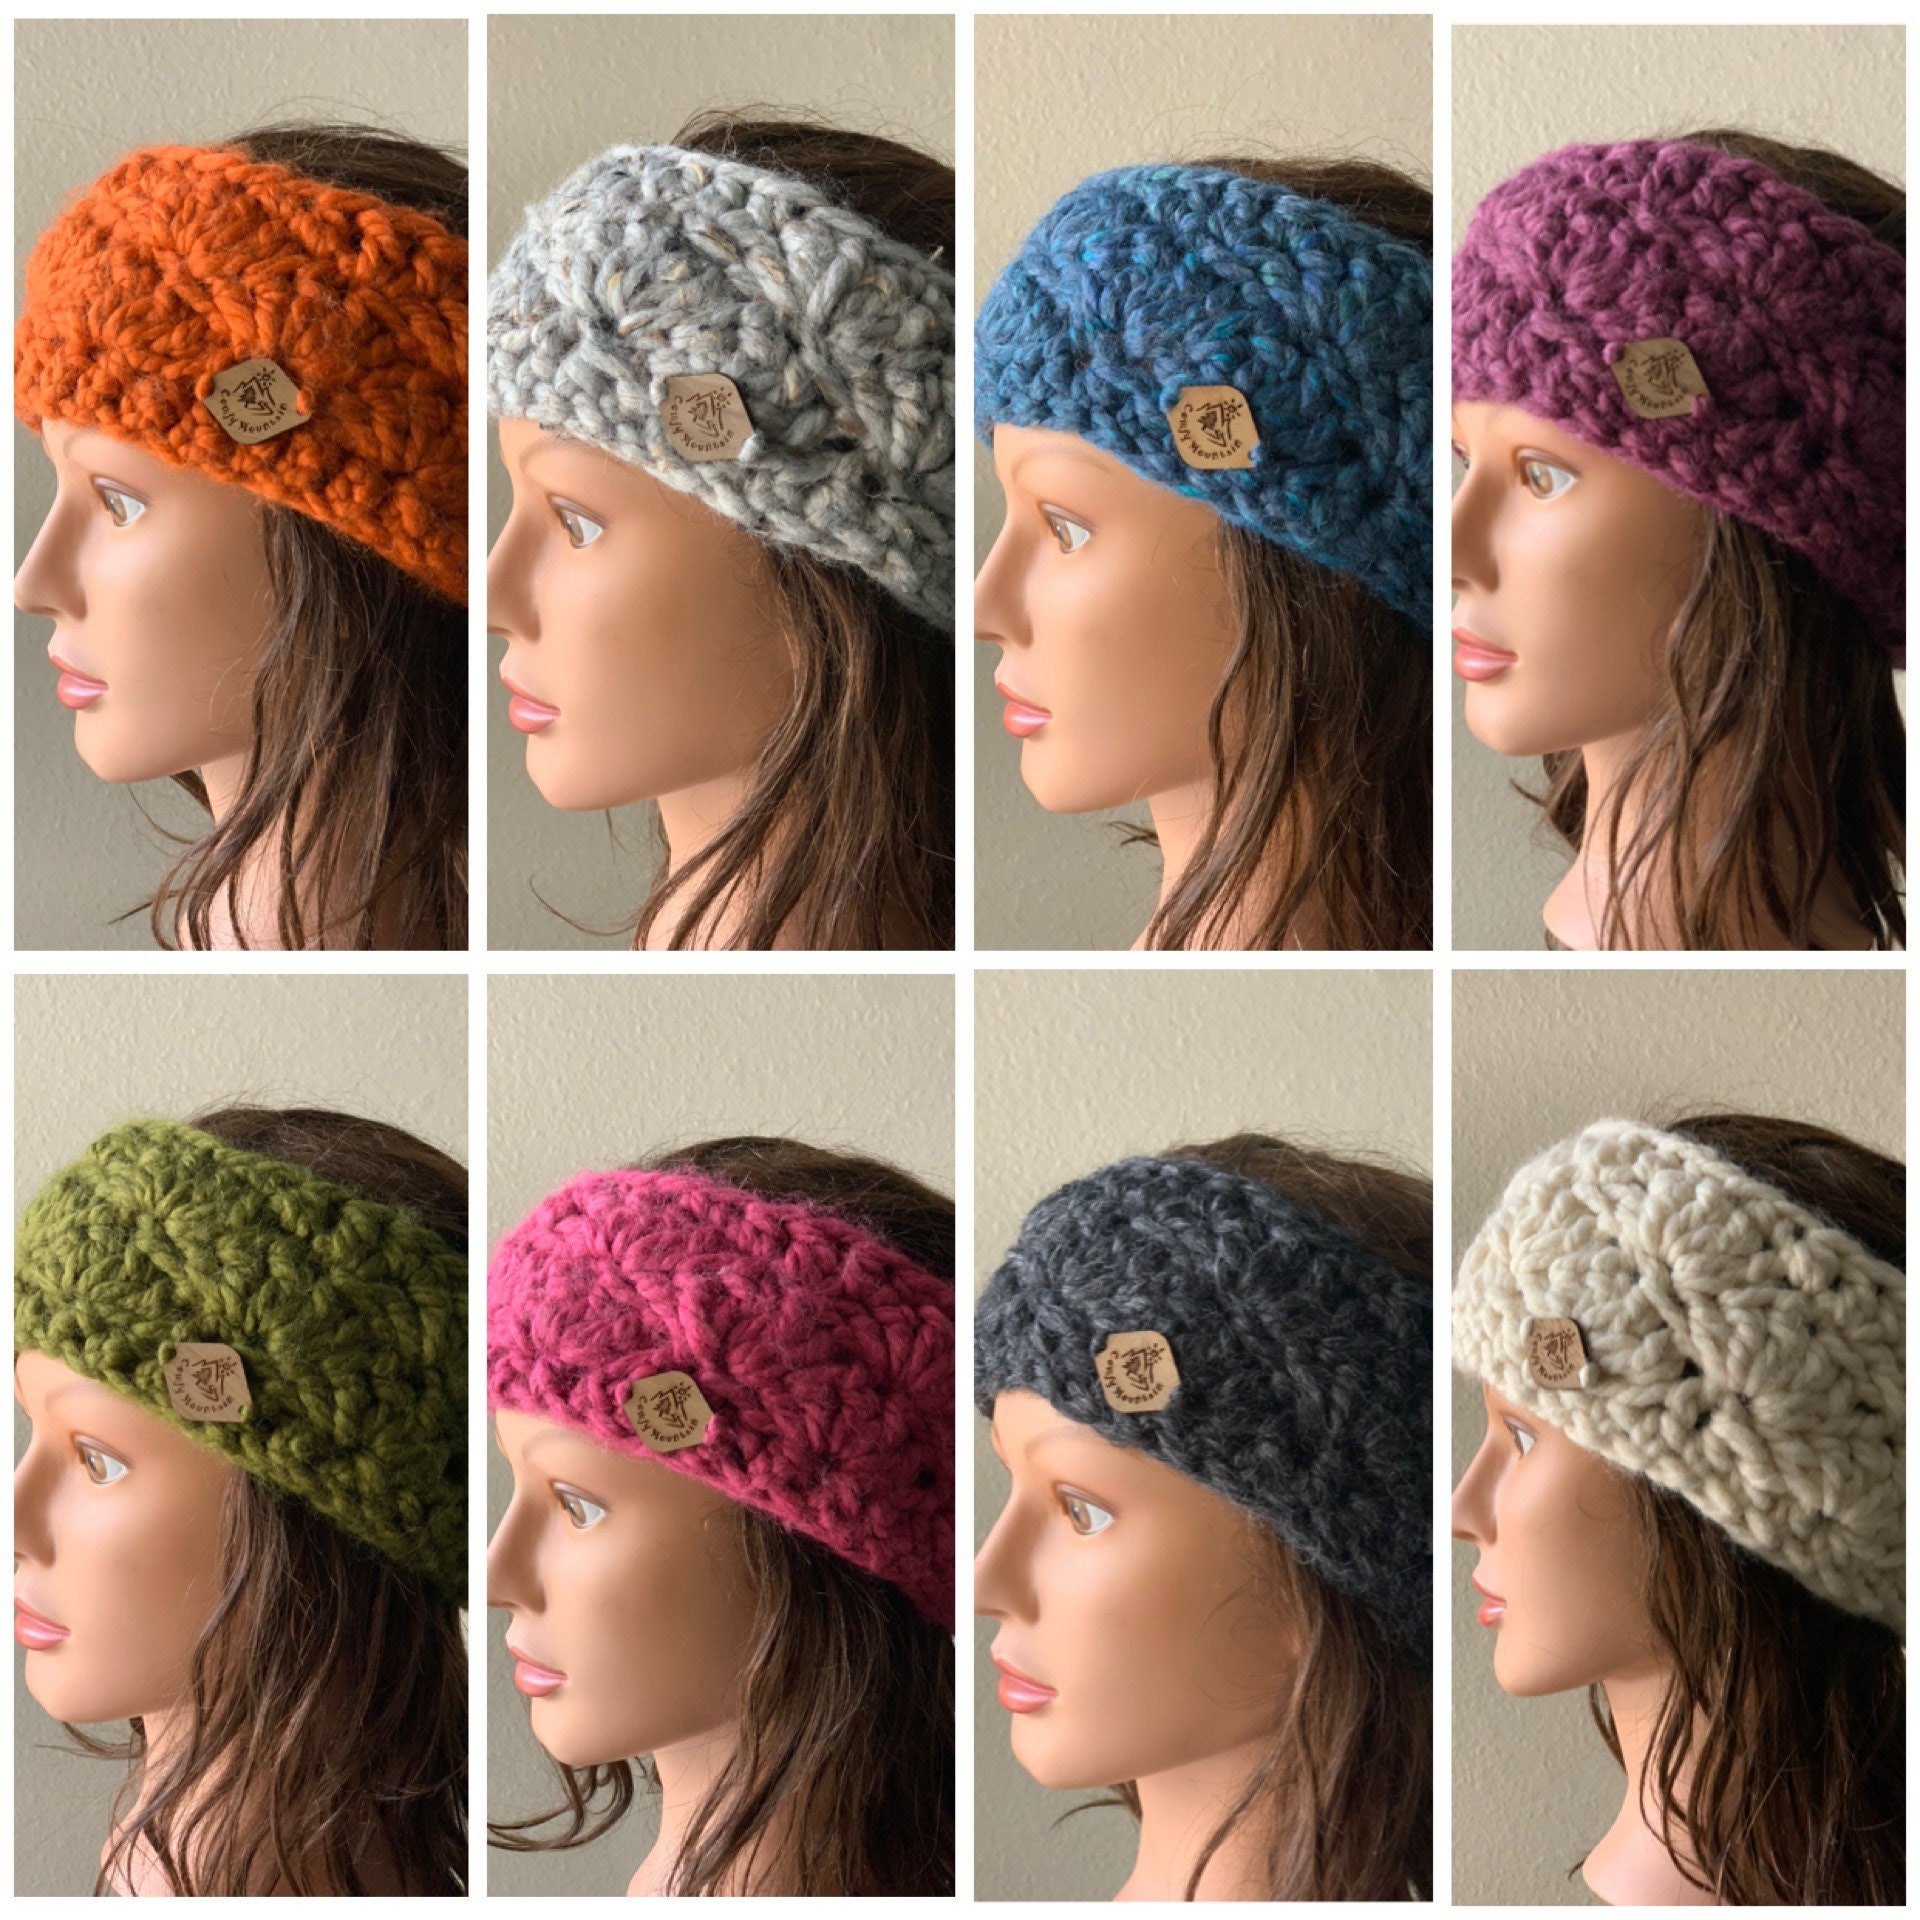 2 Ear Warmers, Headband, Wool Blend, Winter Accessory, Women Women's Gift, Warmers